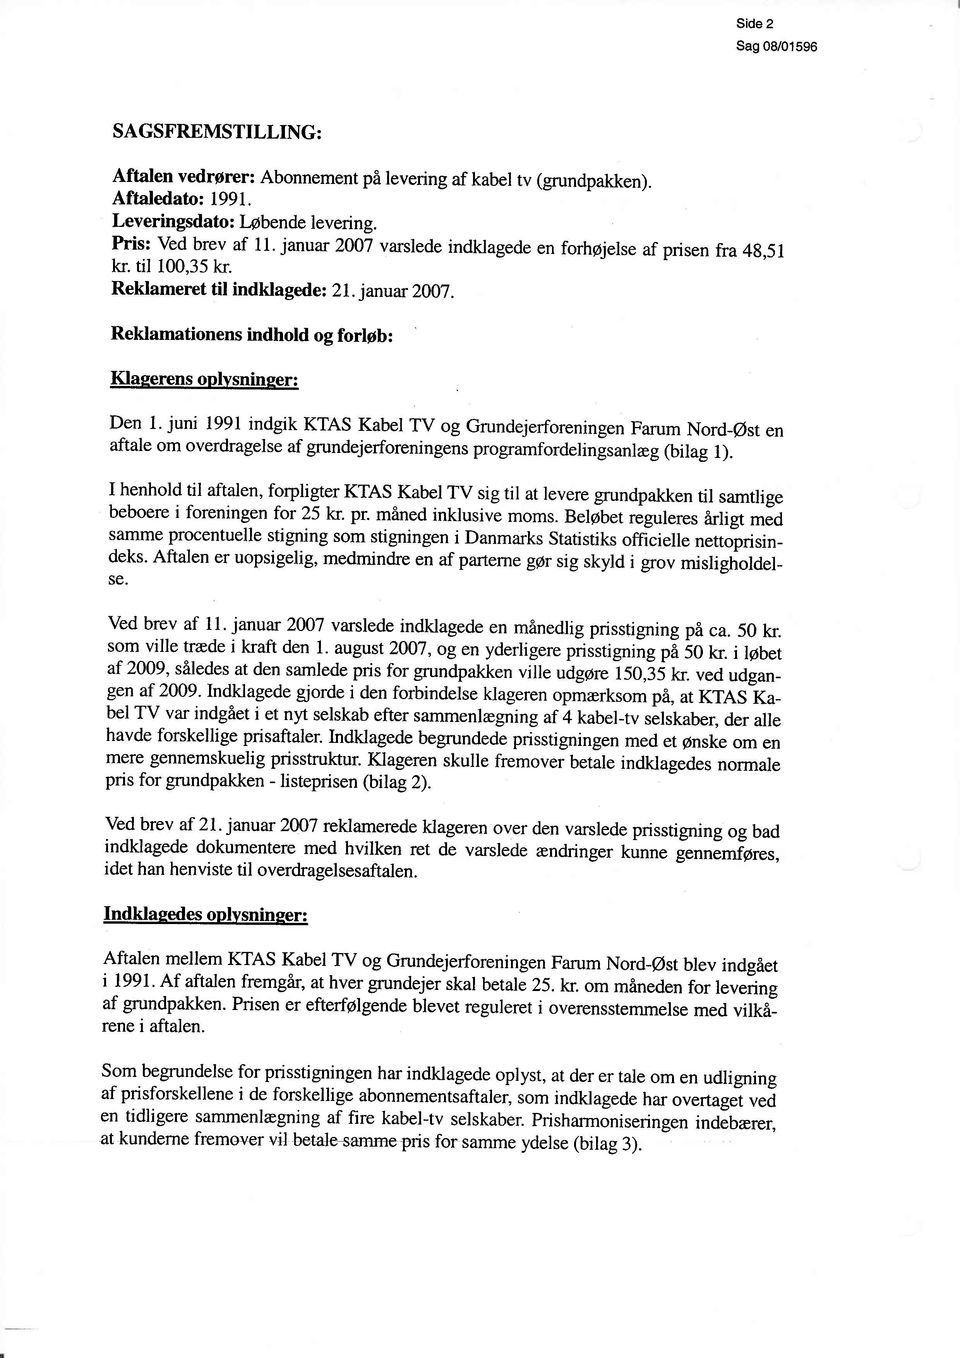 juni 1991 indgik KTAS Kabel TV og Grundejerforeningen Farum Nord-@st en aftale om overdragelse af grundejerforeningens programfordelingsanleg (bilag 1).